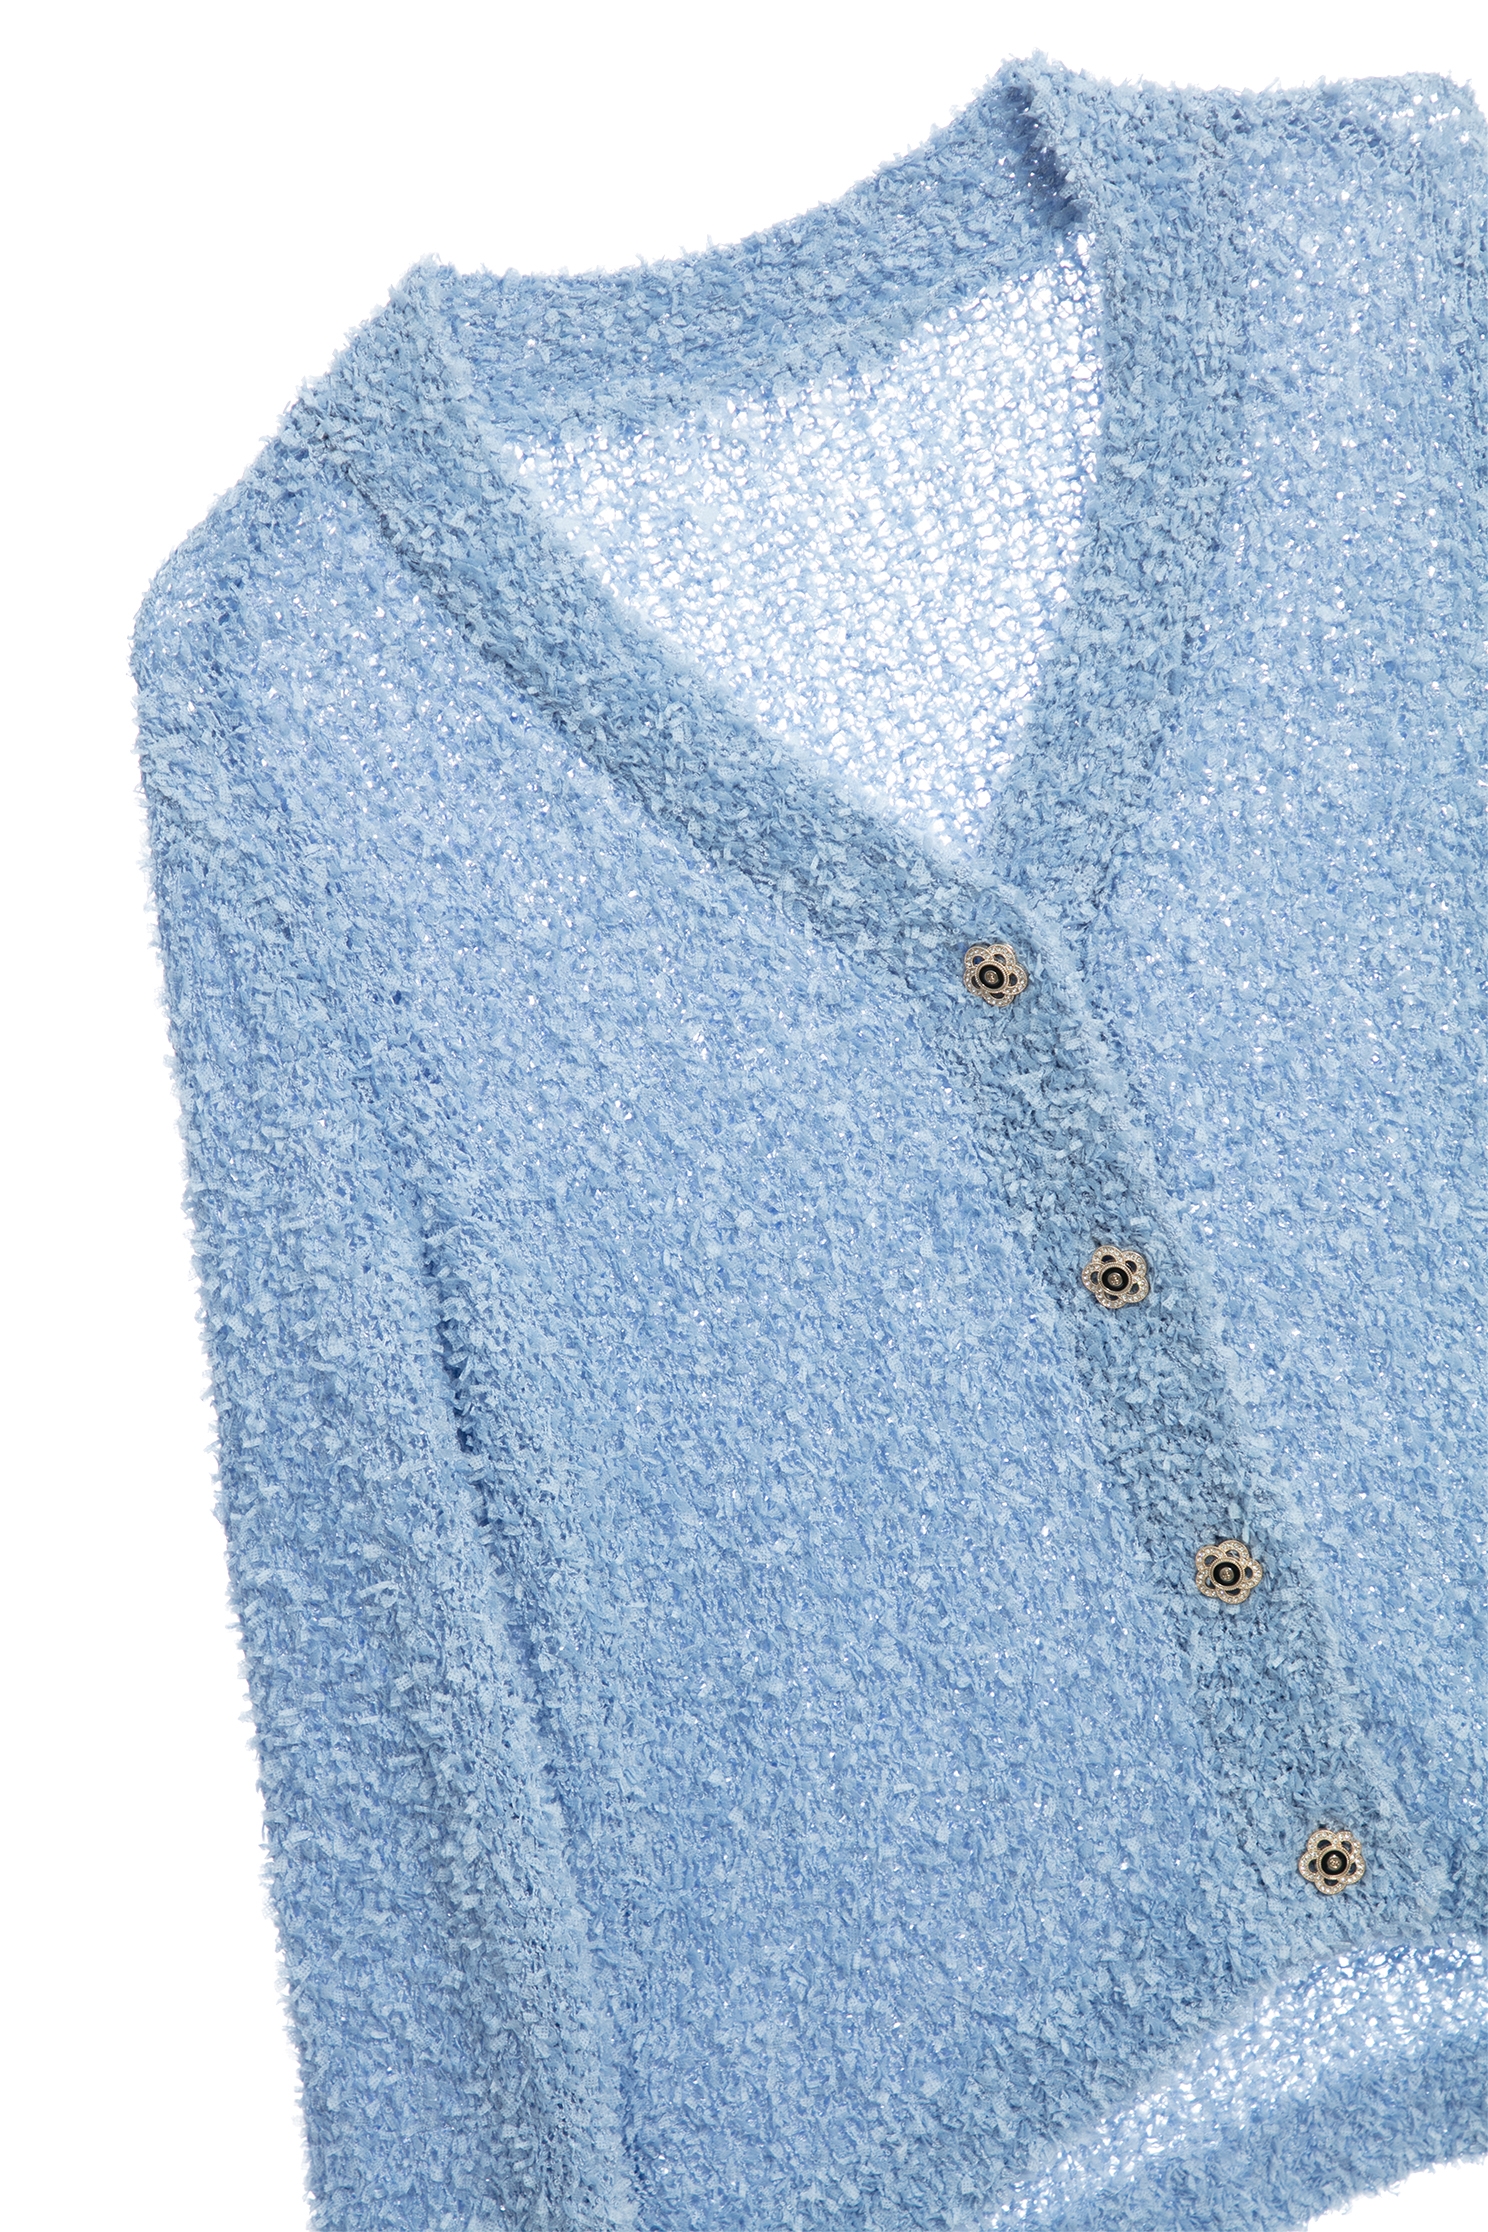 寧靜藍蝴蝶紗針織外套寧靜藍蝴蝶紗針織外套,人氣商品,外套,春夏穿搭,針織,針織外套